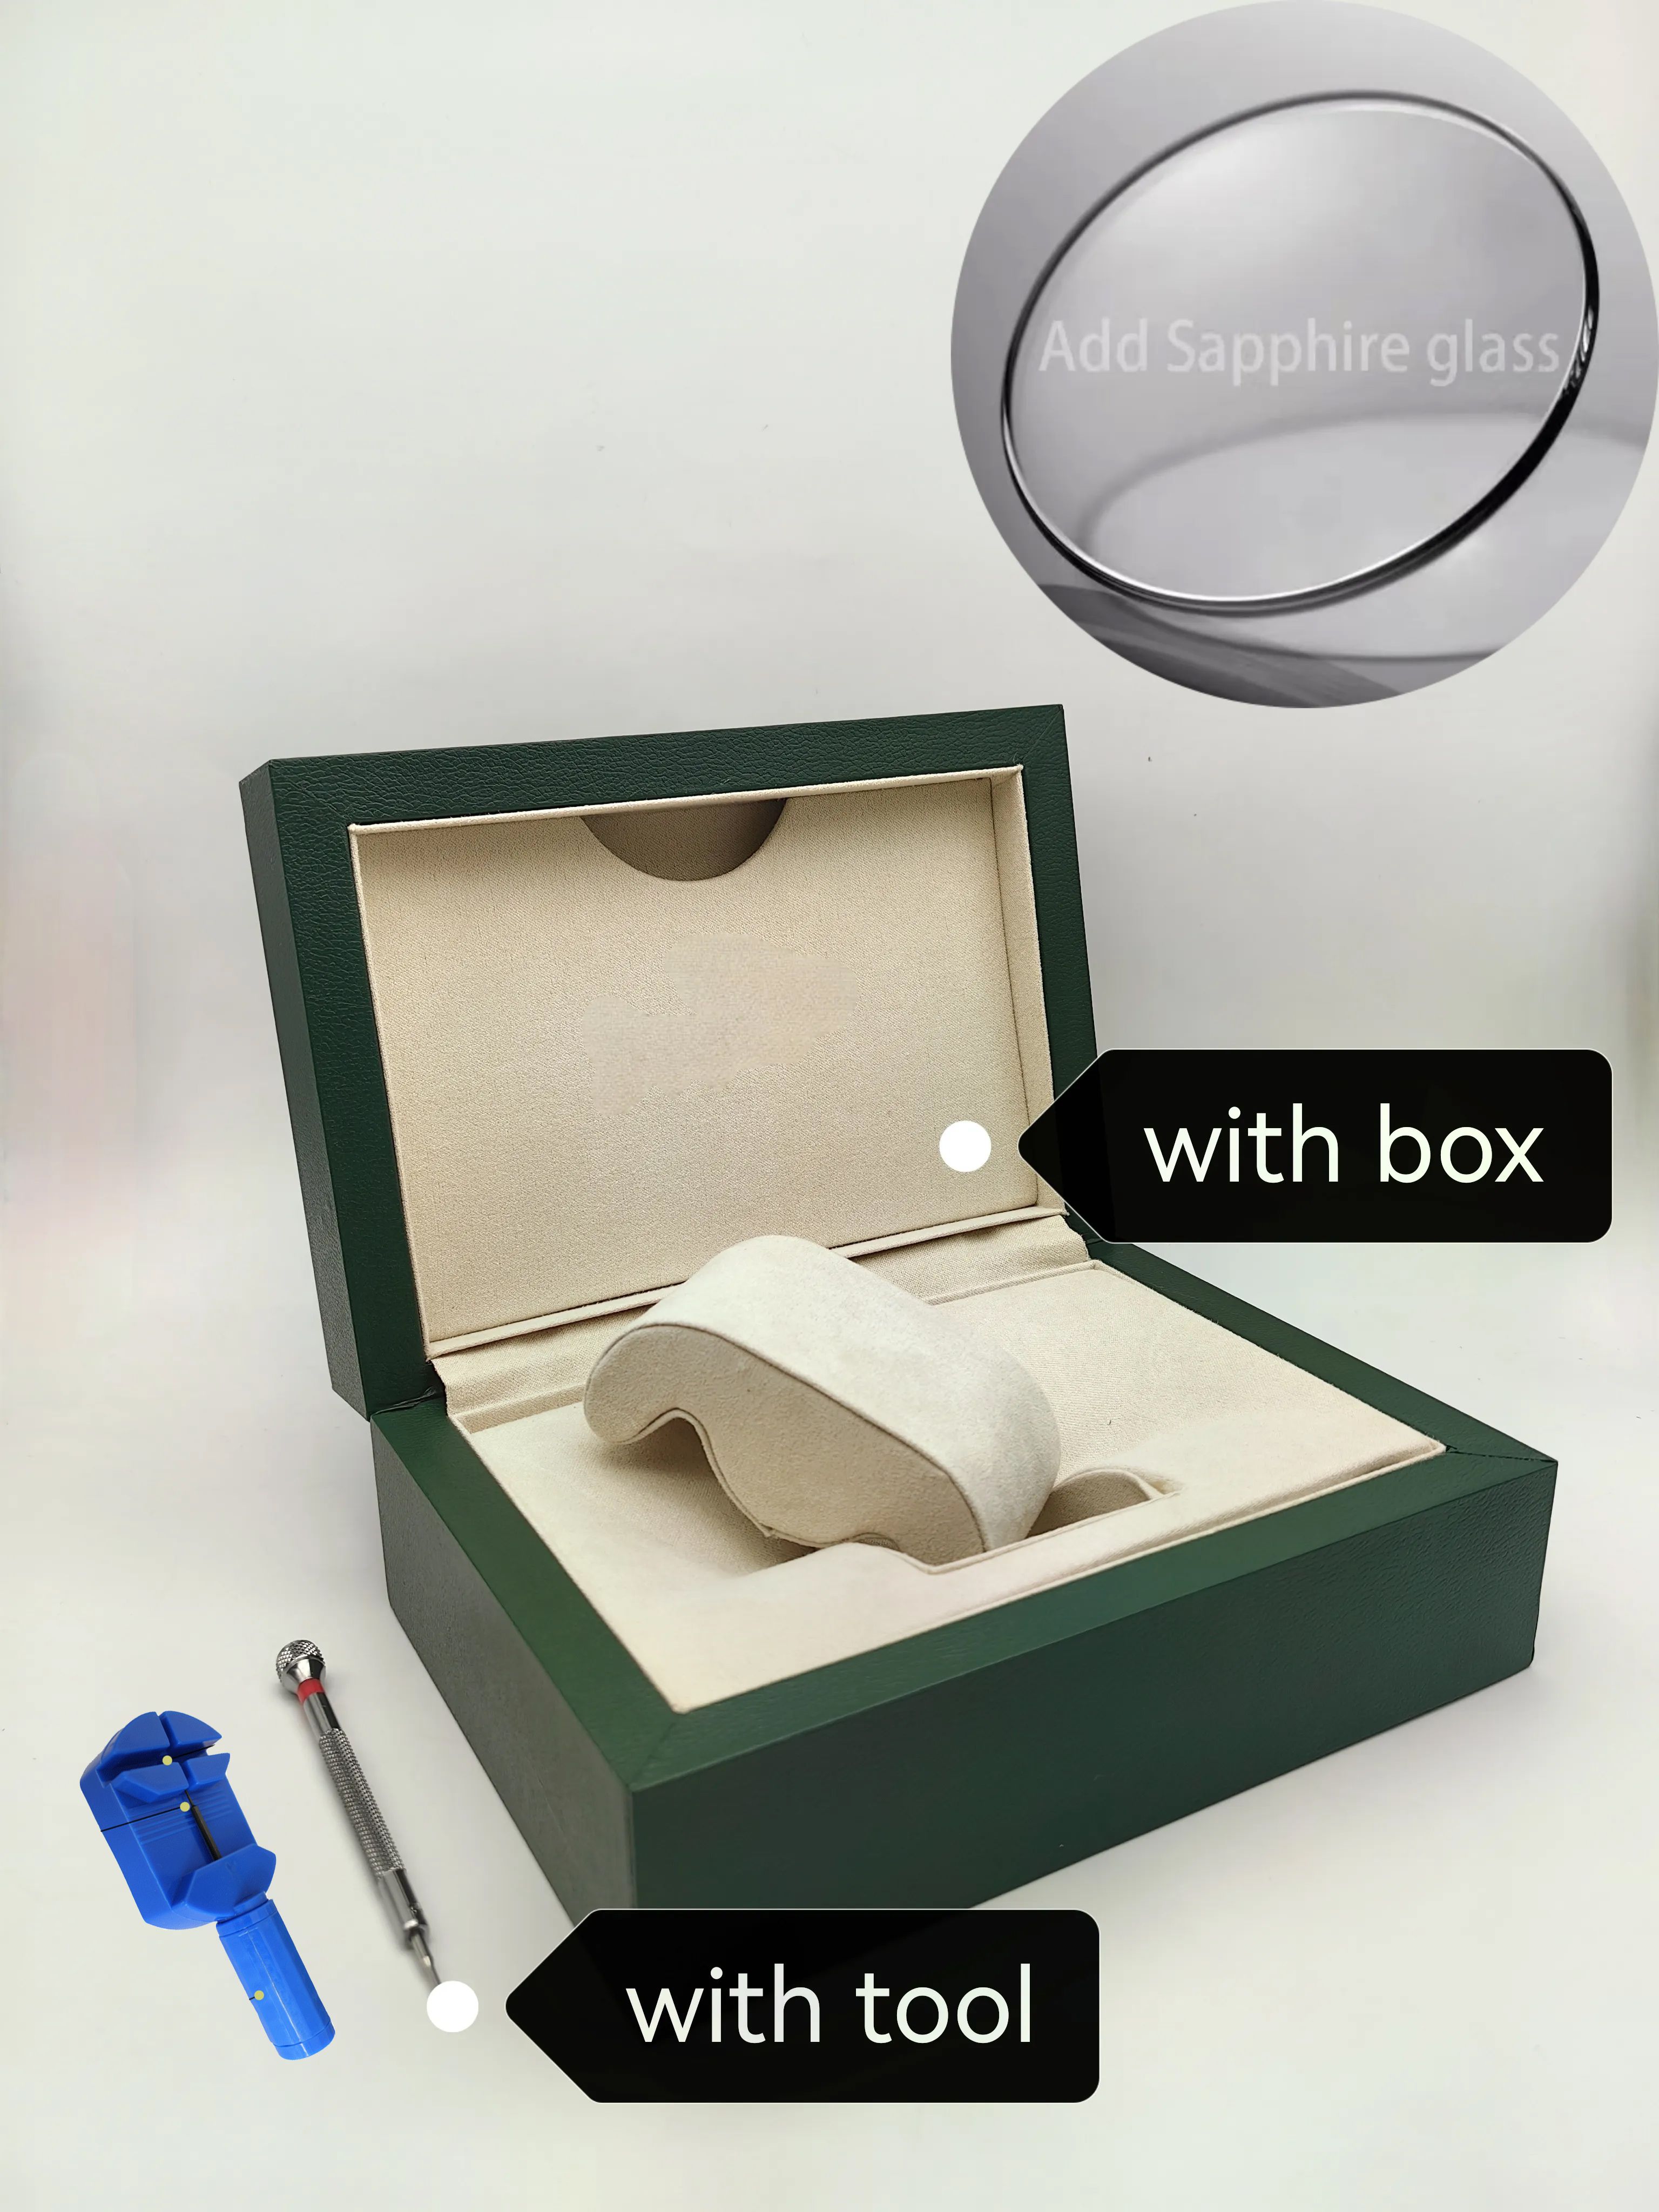 Uhr+Saphirglas+Box